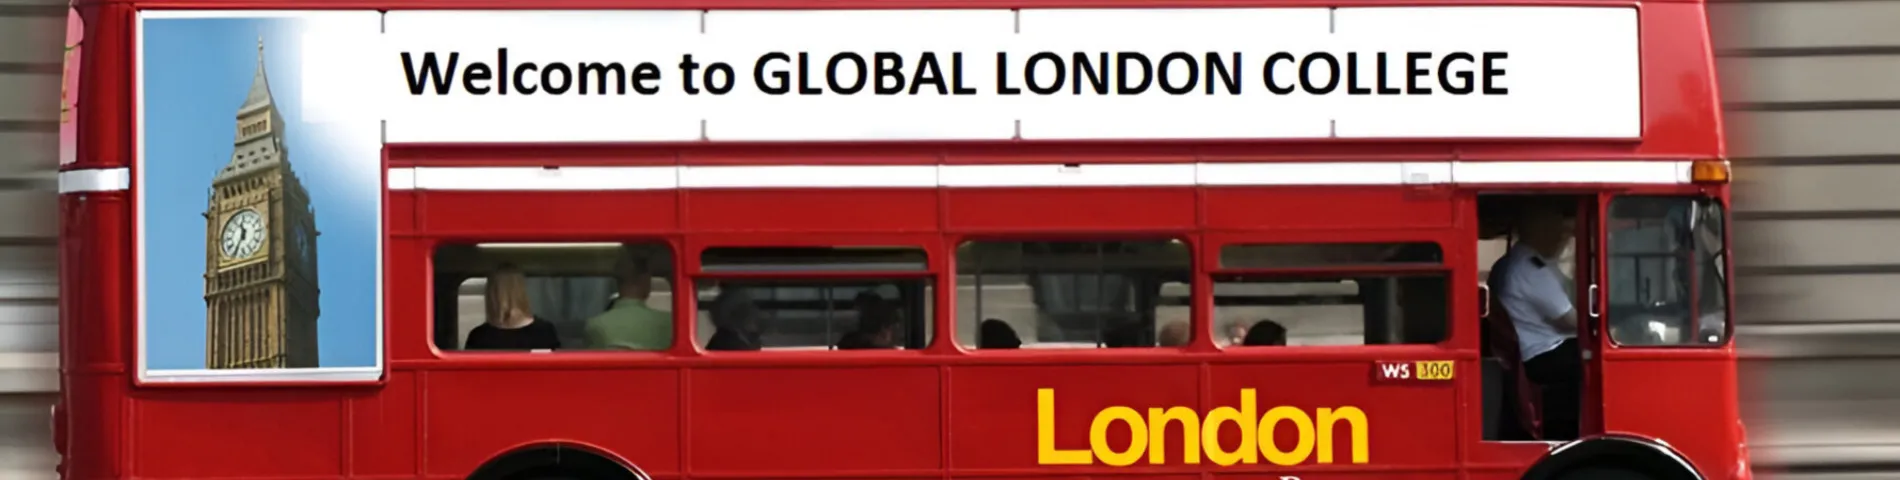 Imatge 1 de l'escola Global London College